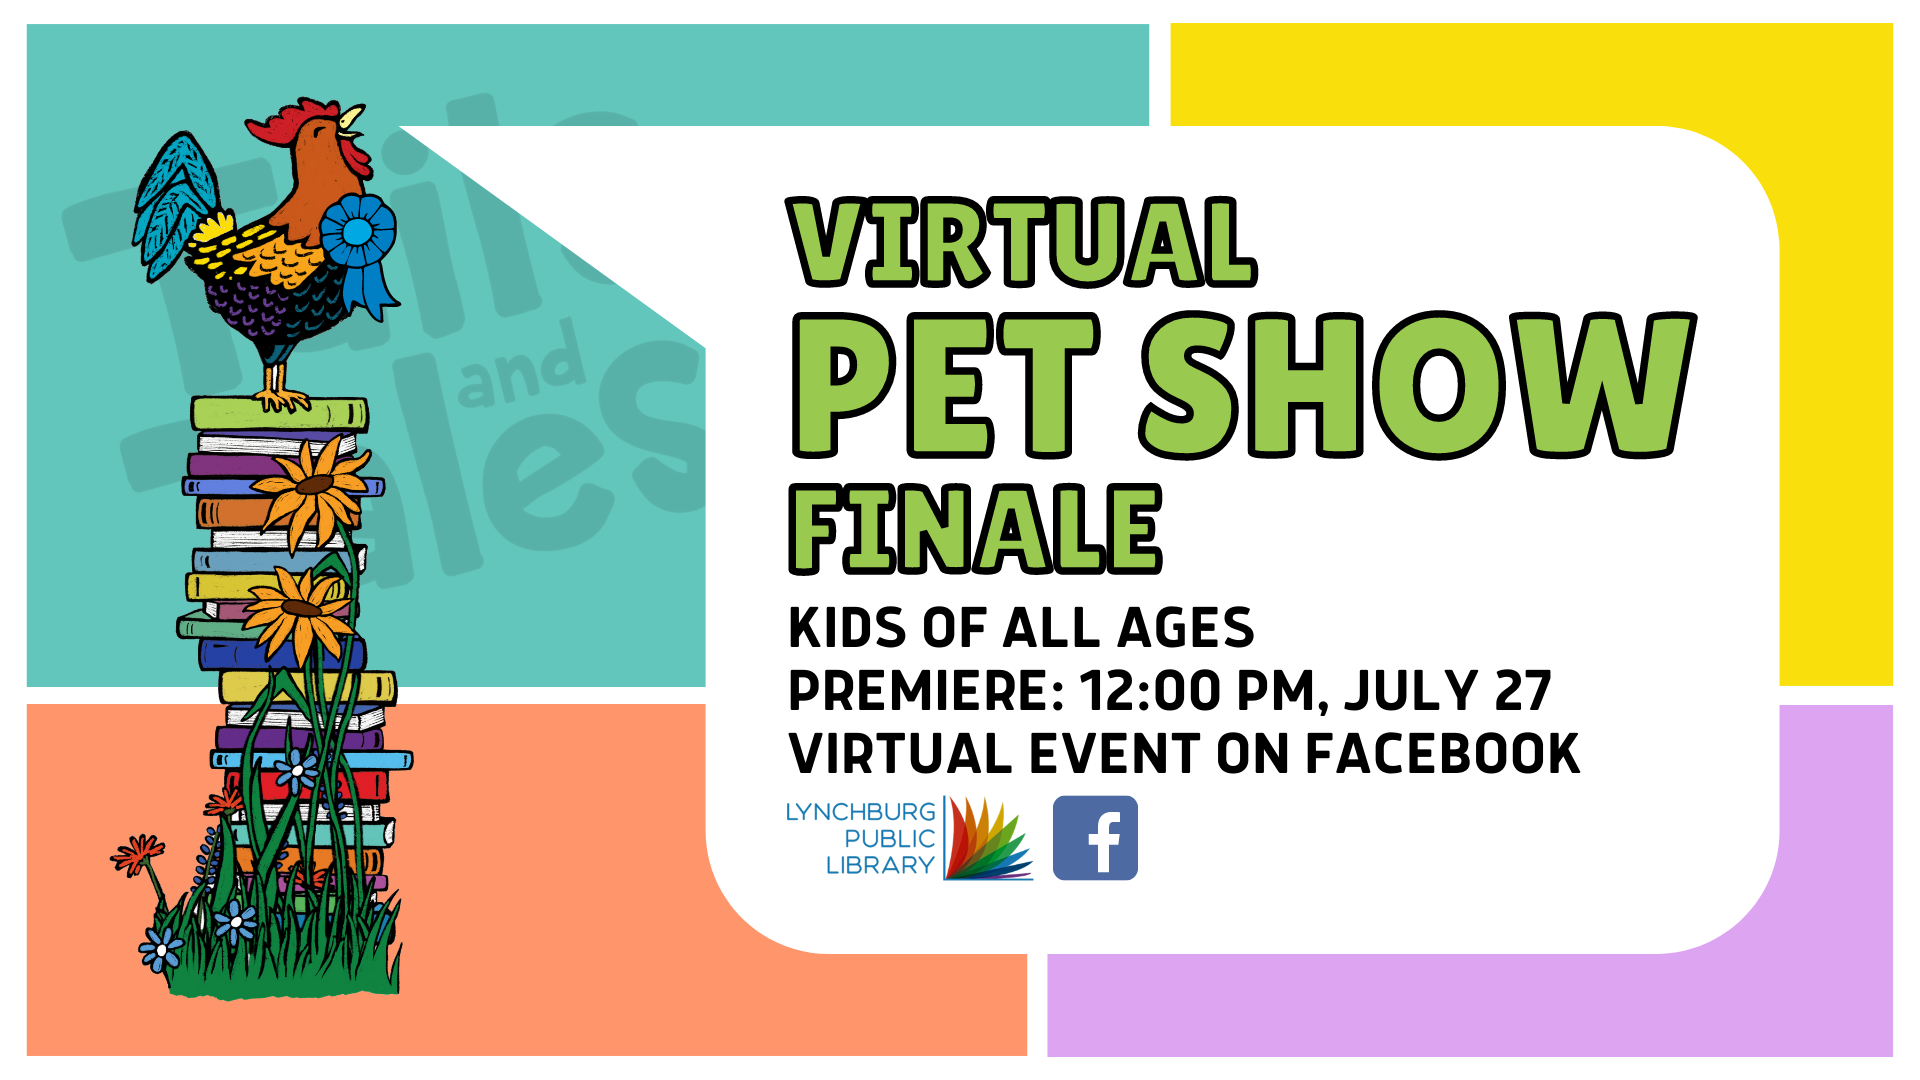 Virtual Pet Show Finale